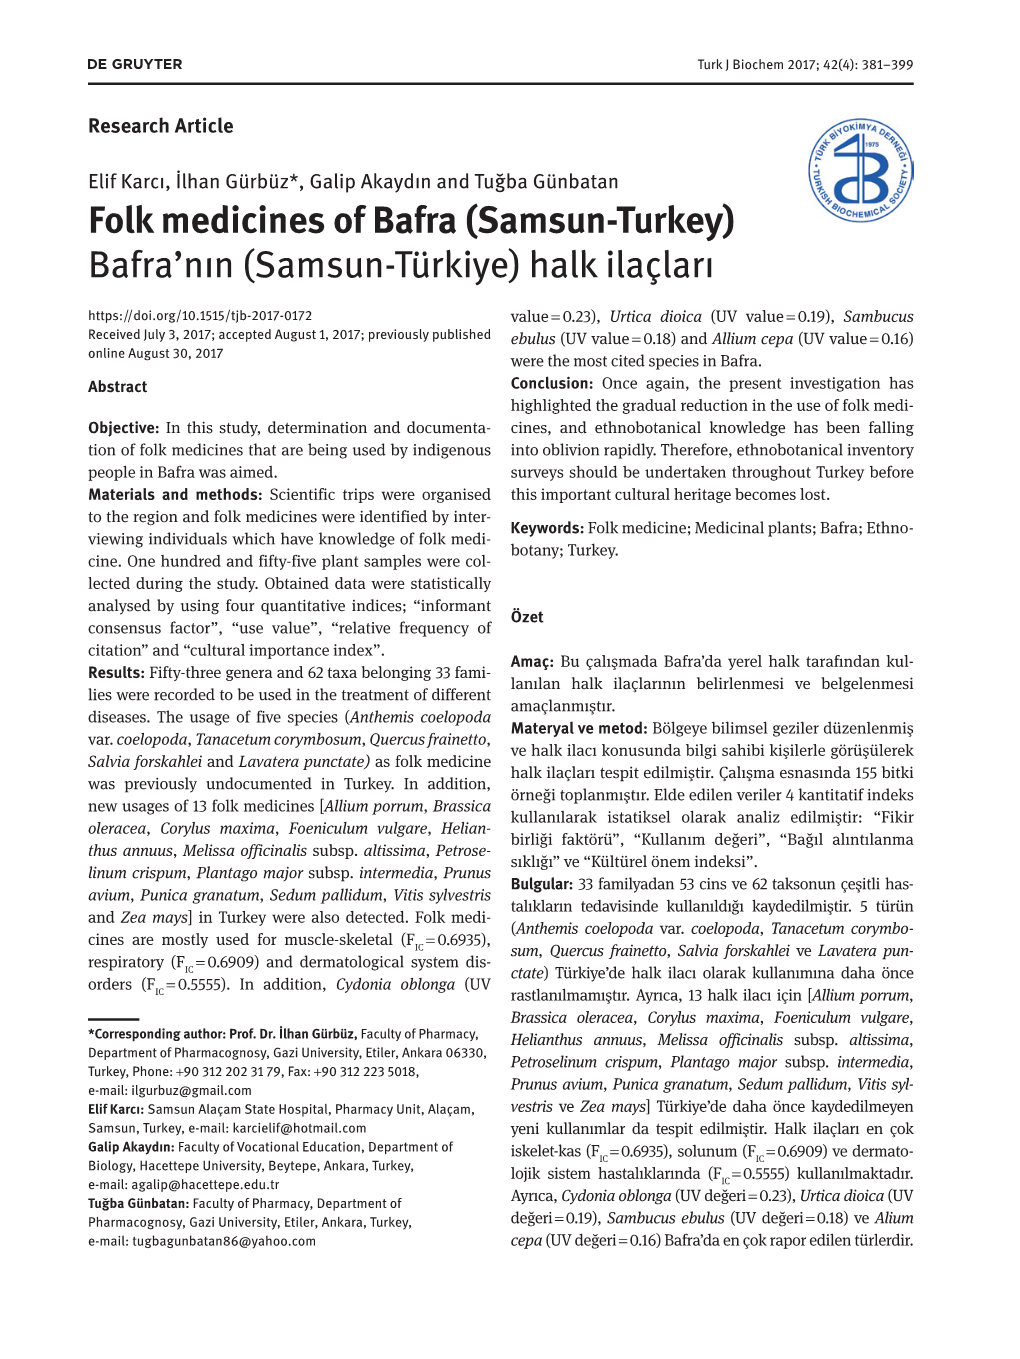 Folk Medicines of Bafra (Samsun-Turkey) Bafra'nın (Samsun-Türkiye) Halk Ilaçları